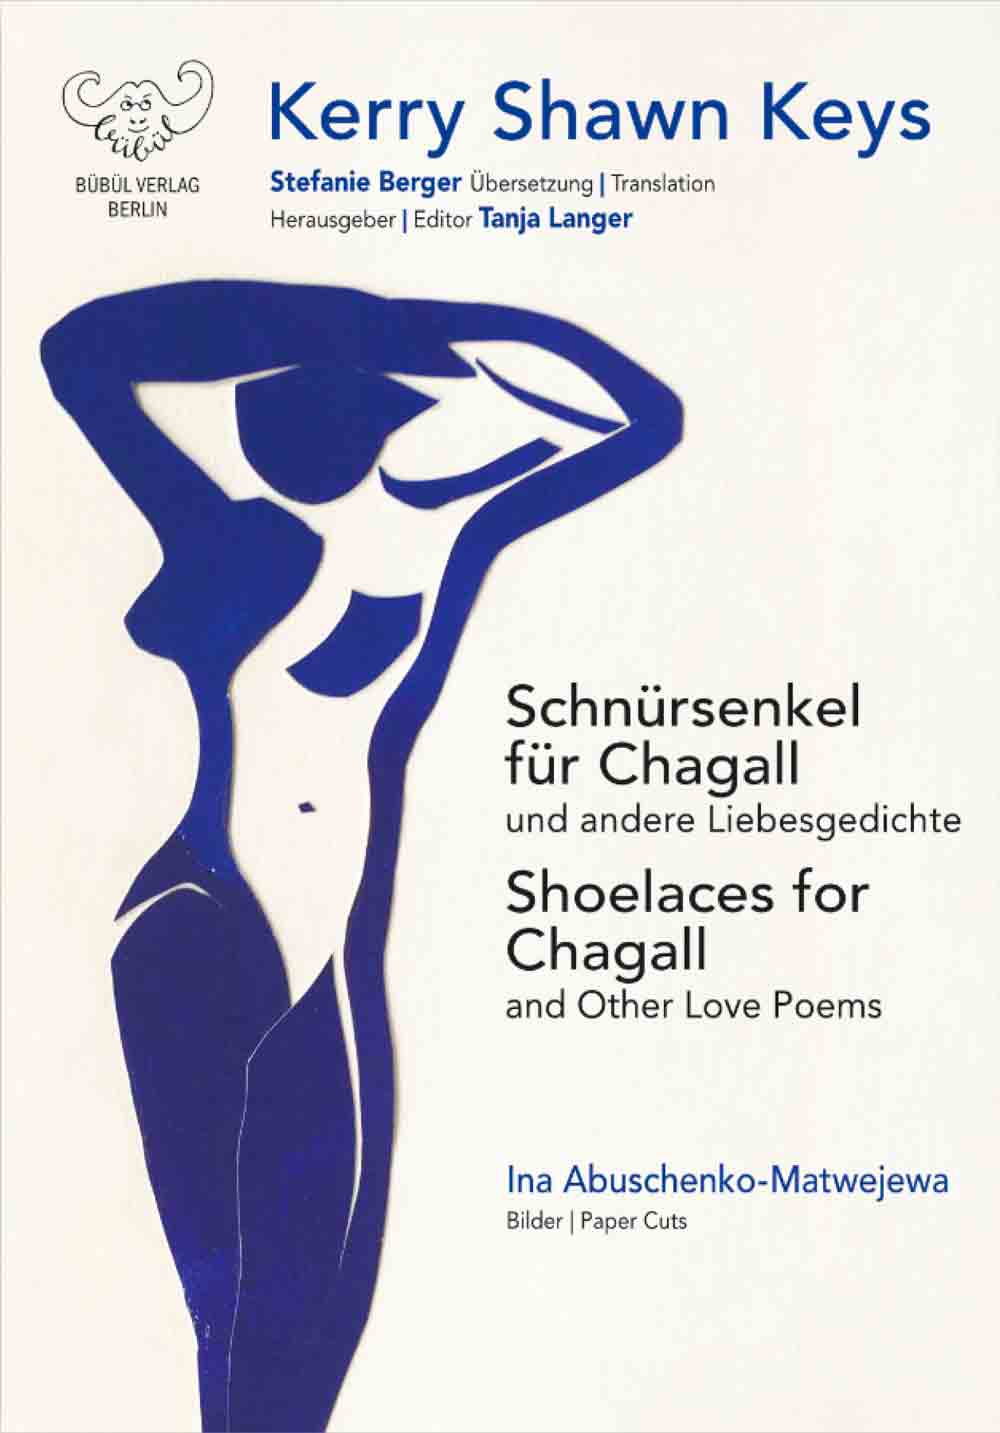 Anzeige: Lesetipps für Gütersloh: Kerry Shawn Keys »Shoelaces for Chagall«, »Schnürsenkel für Chagall«, Buch online bestellen, online kaufen